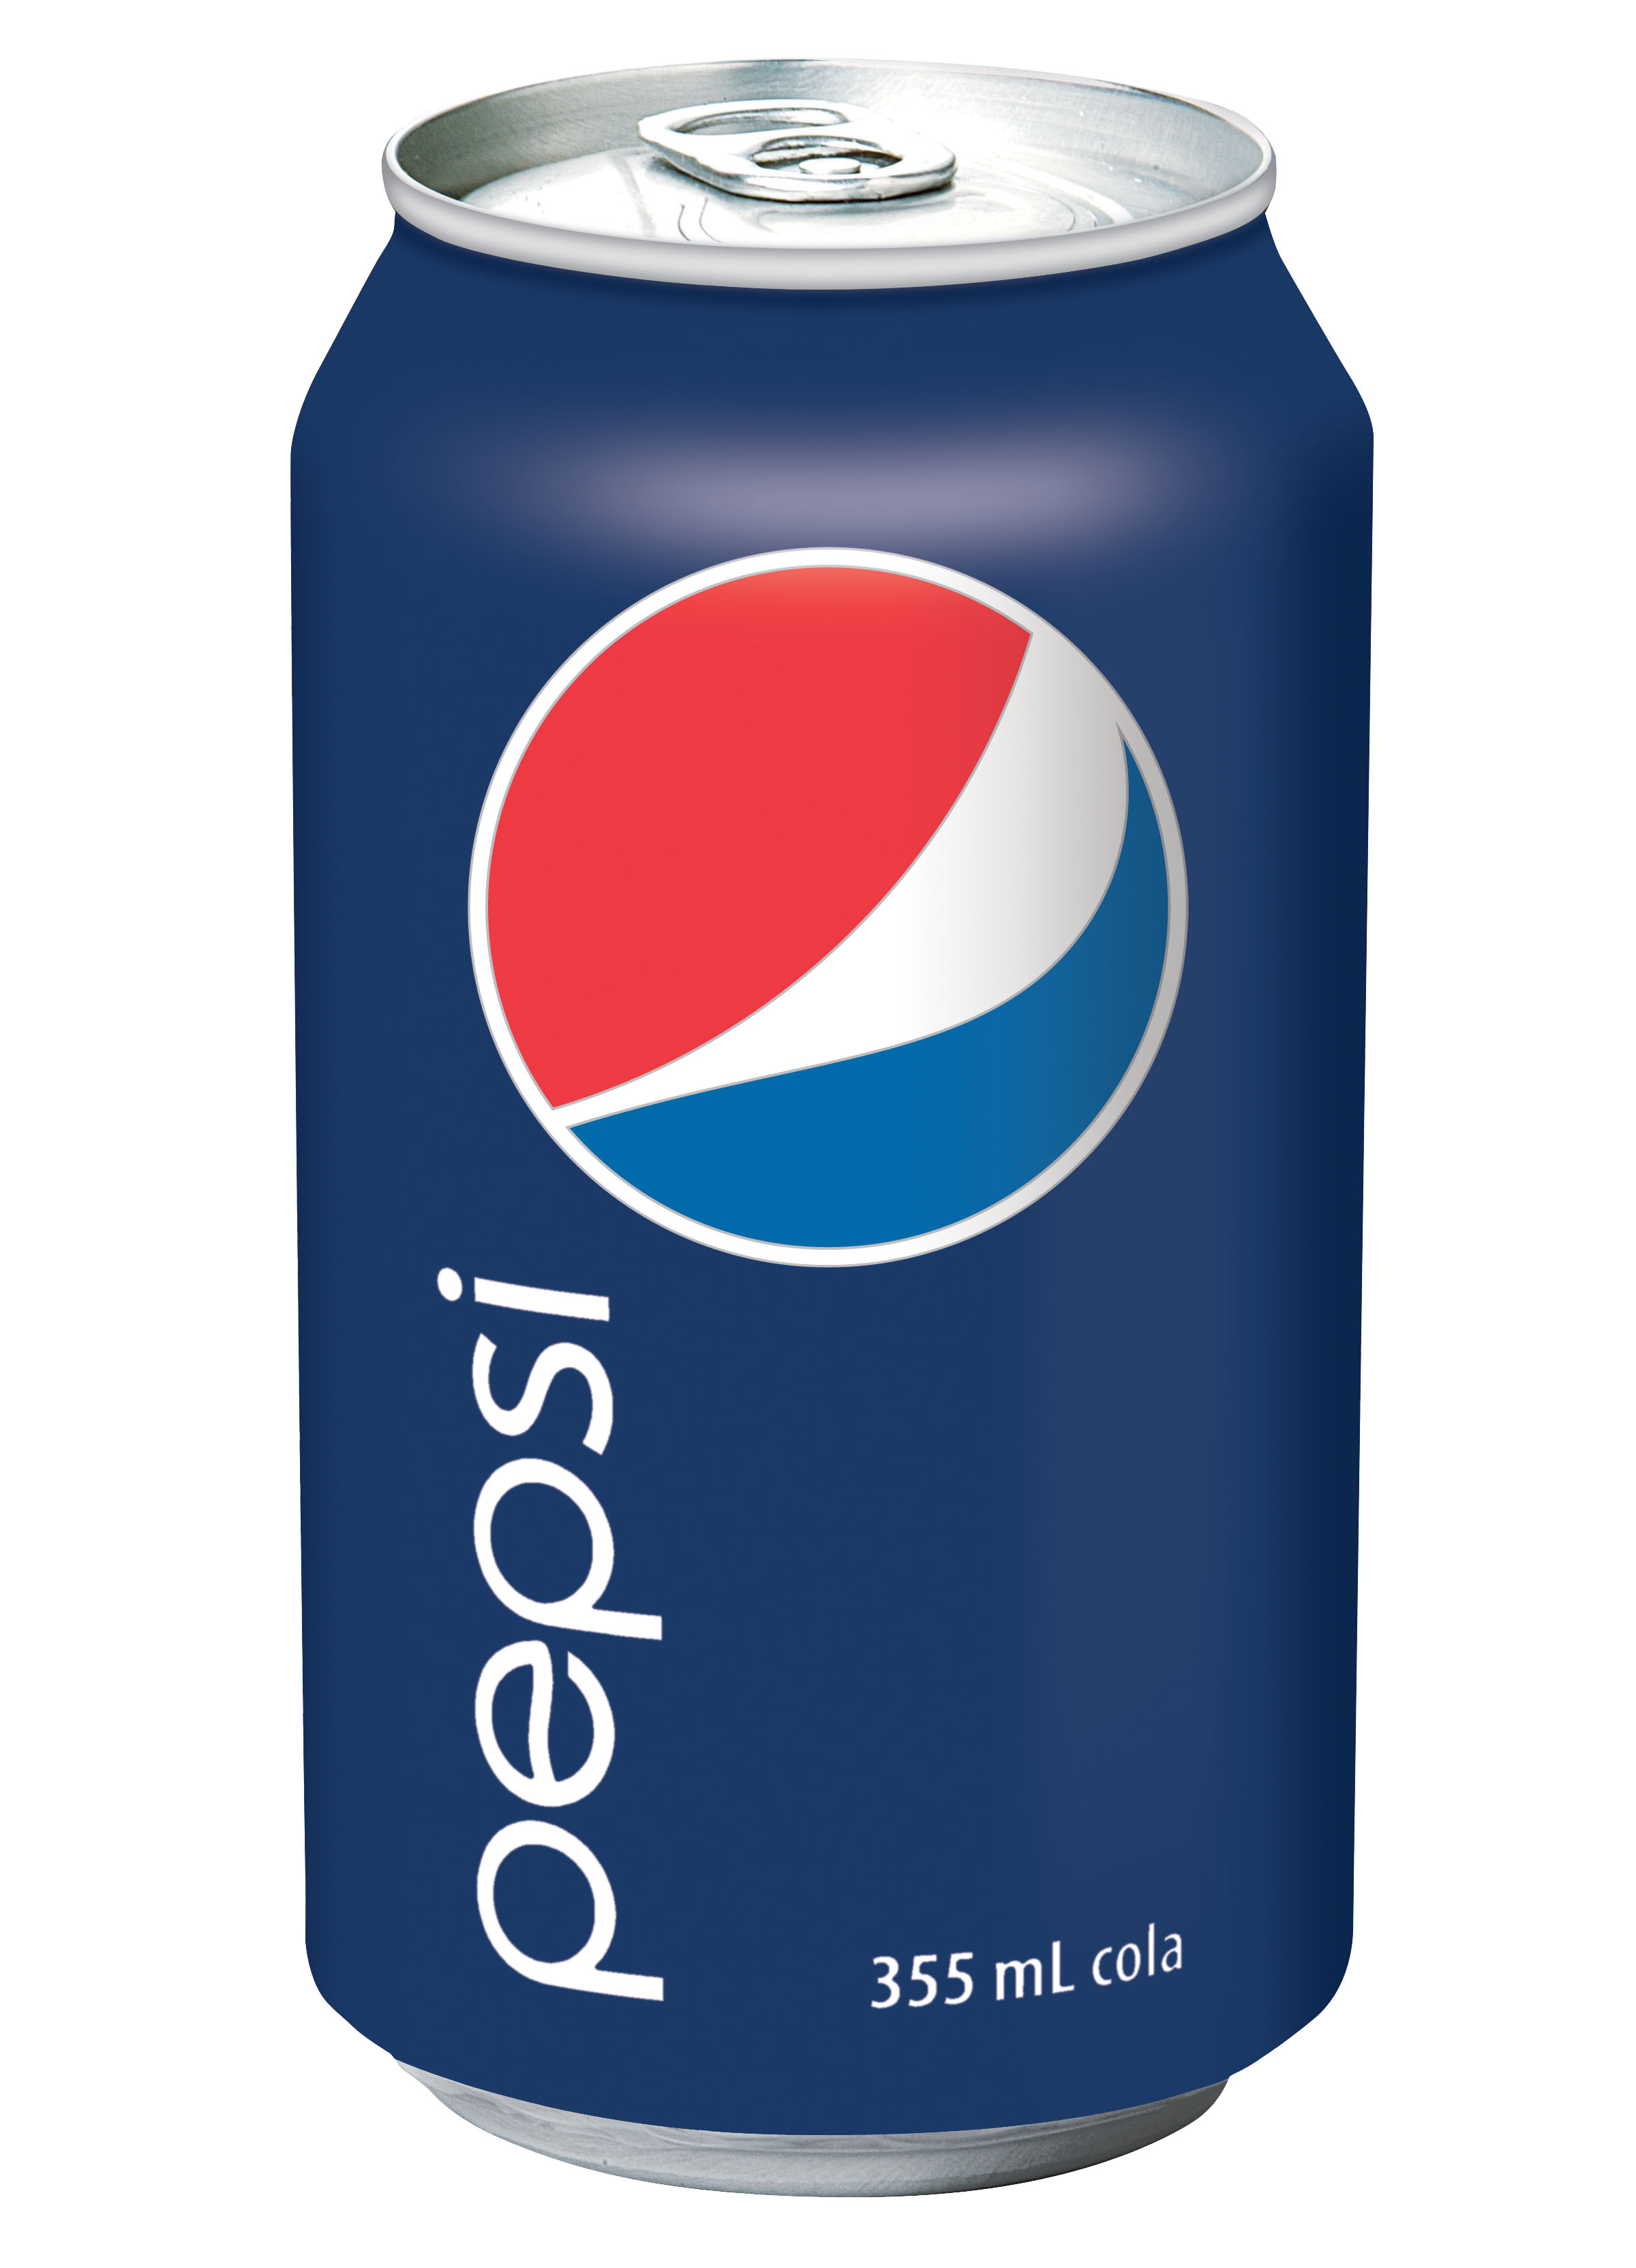 Pepsi Transparent Pic image #